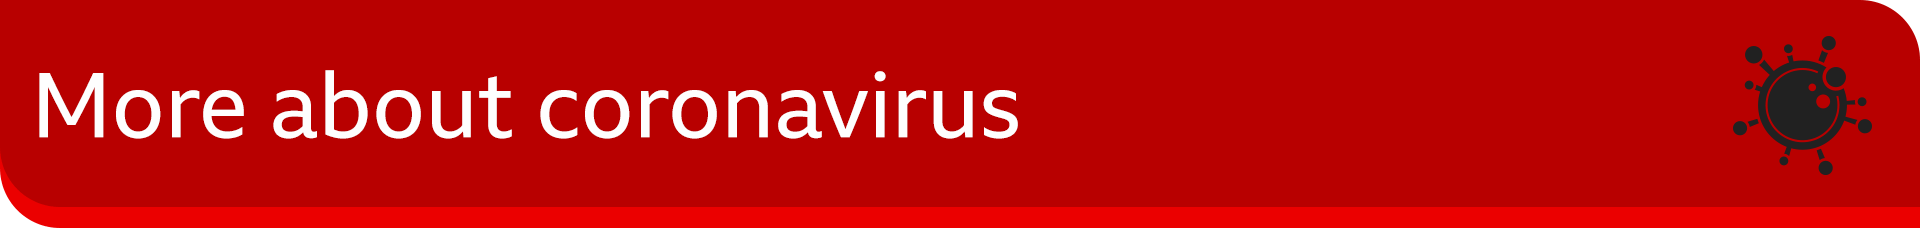 Immagine banner che legge 'more about coronavirus''more about coronavirus'